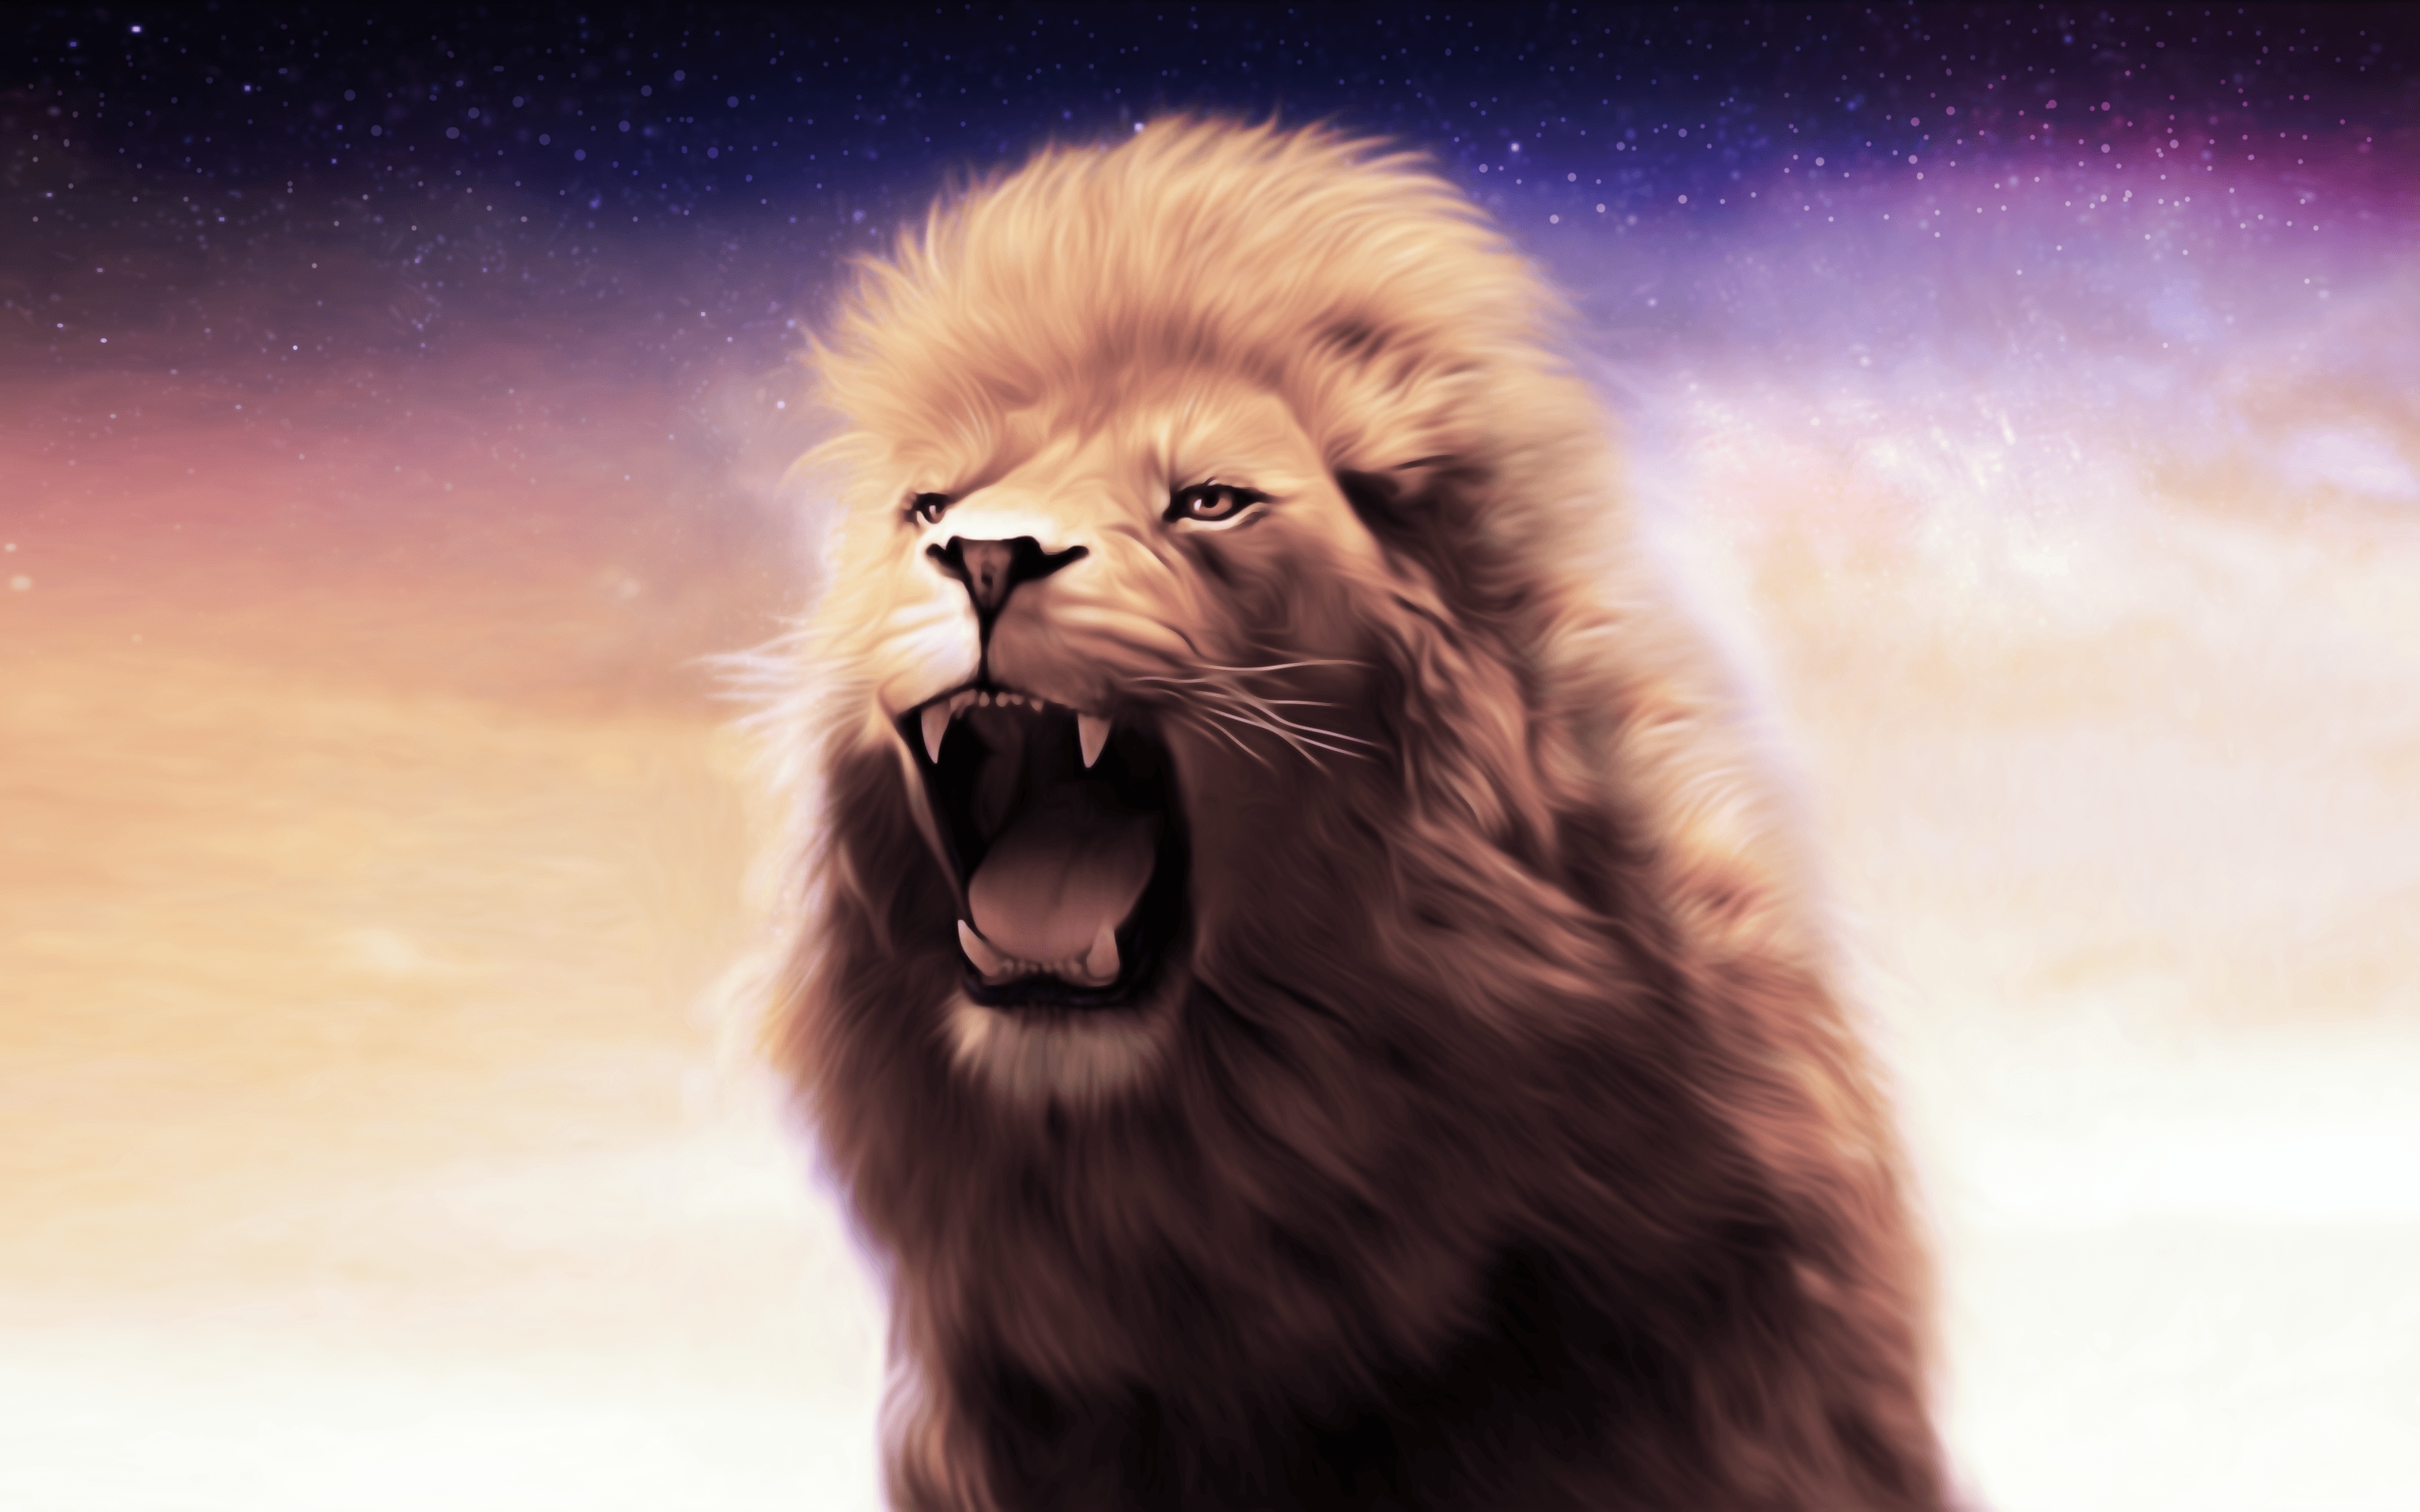 Danger Lion - Lion Roar - Animal Art